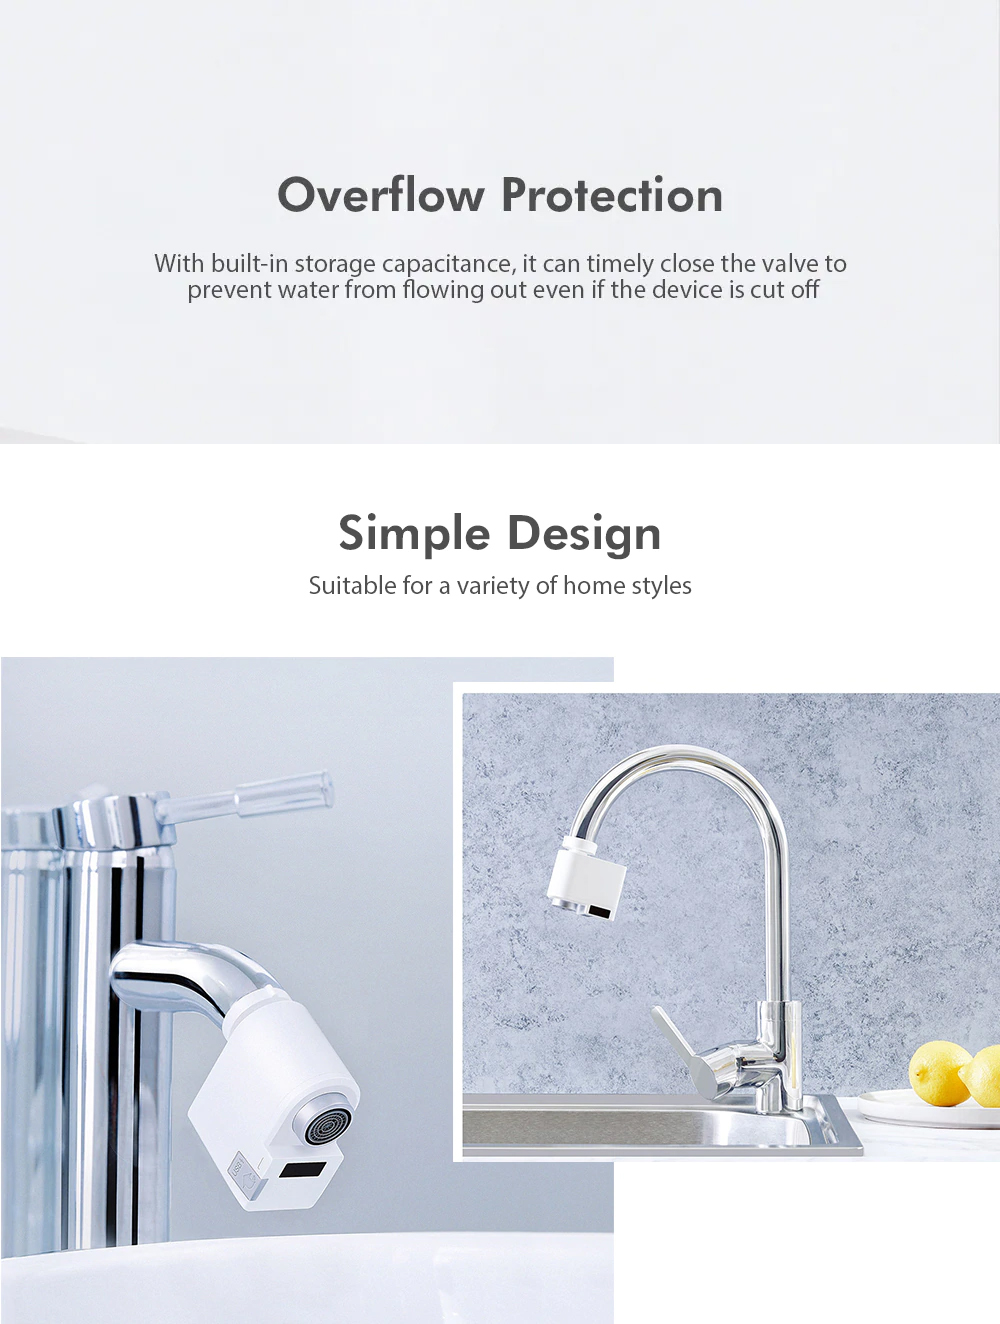 Xiaomi Zajia Infrared Induction Water Saving Faucet